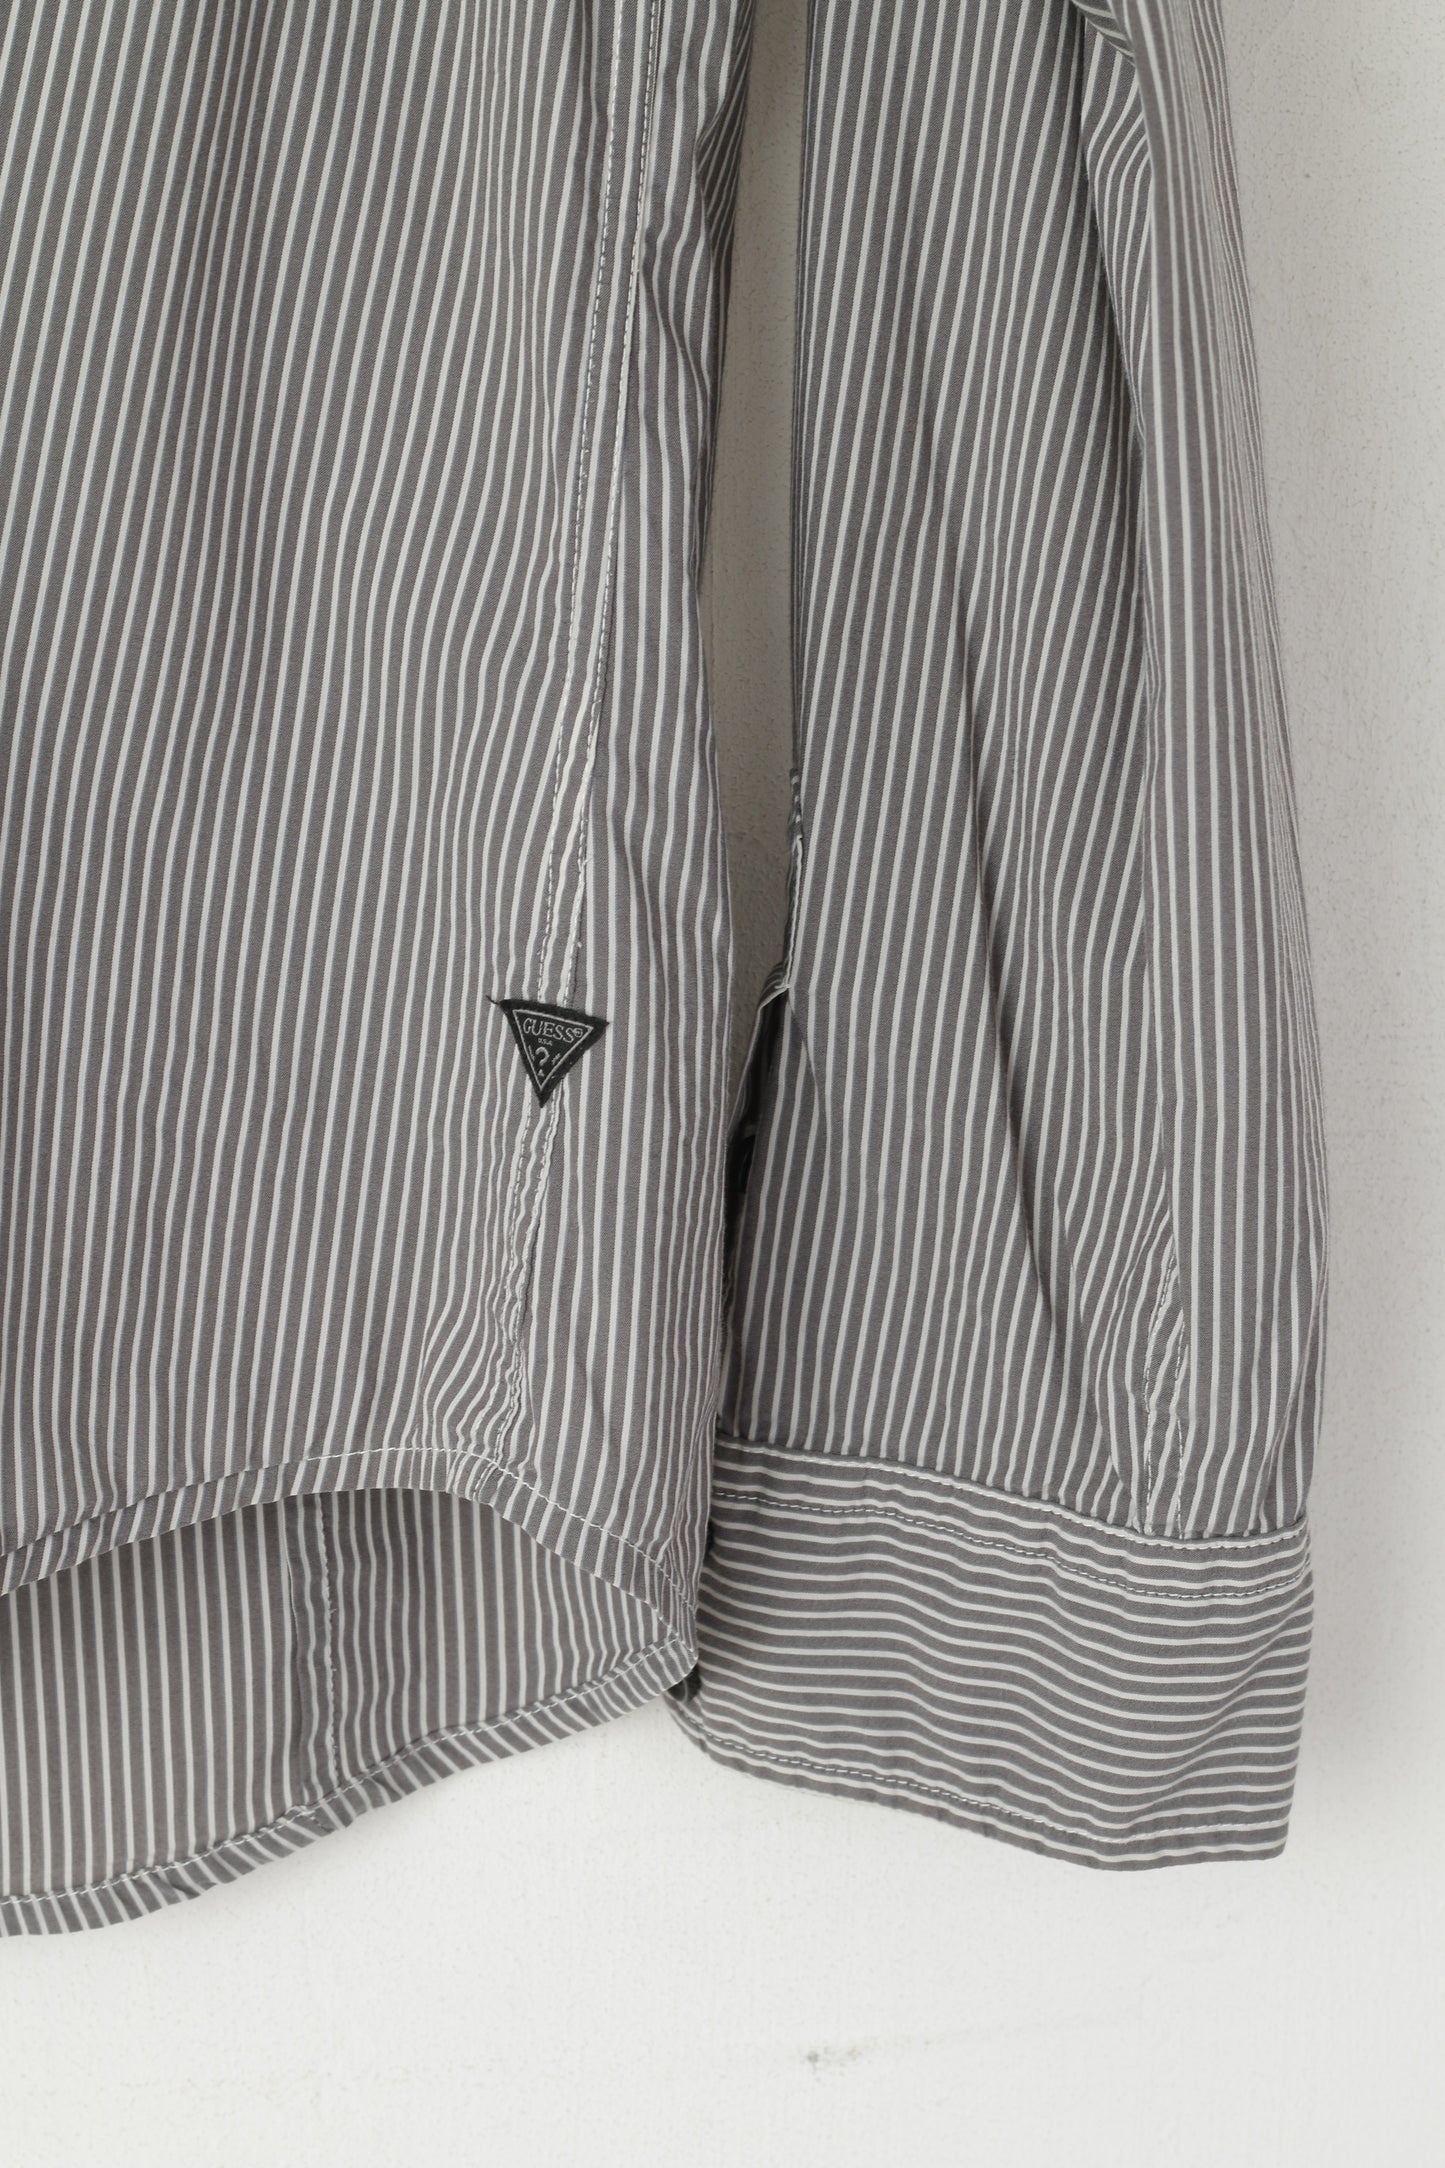 Guess Camicia casual da uomo M. Top con taschino a maniche lunghe in cotone elasticizzato a righe grigie